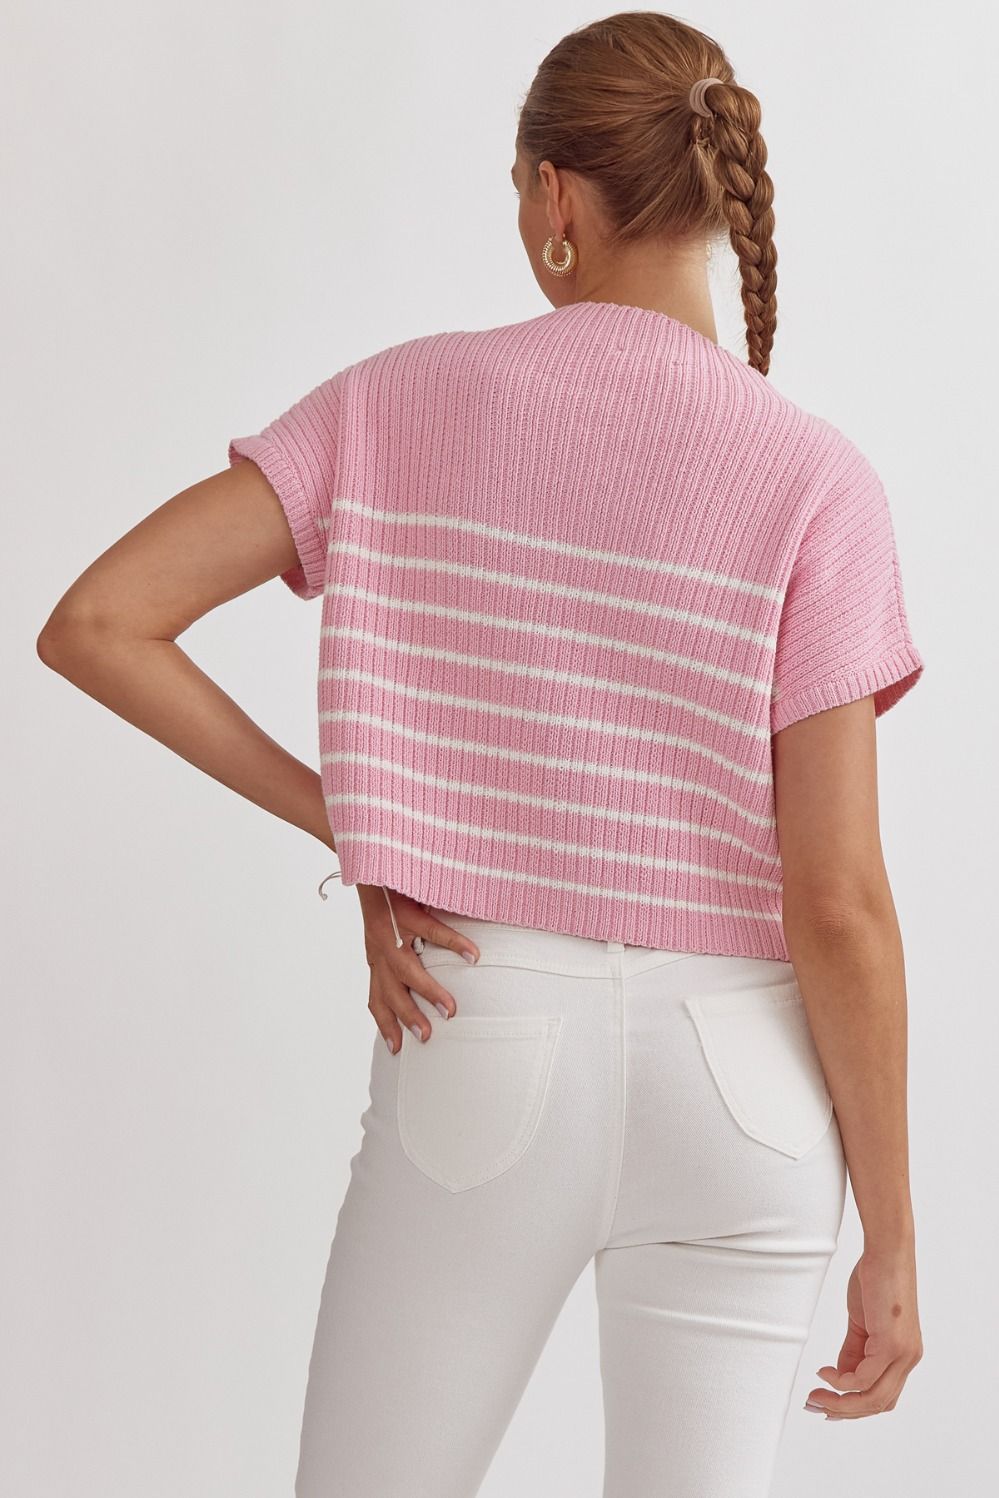 Boxy Stripe Sweater - Pink/White